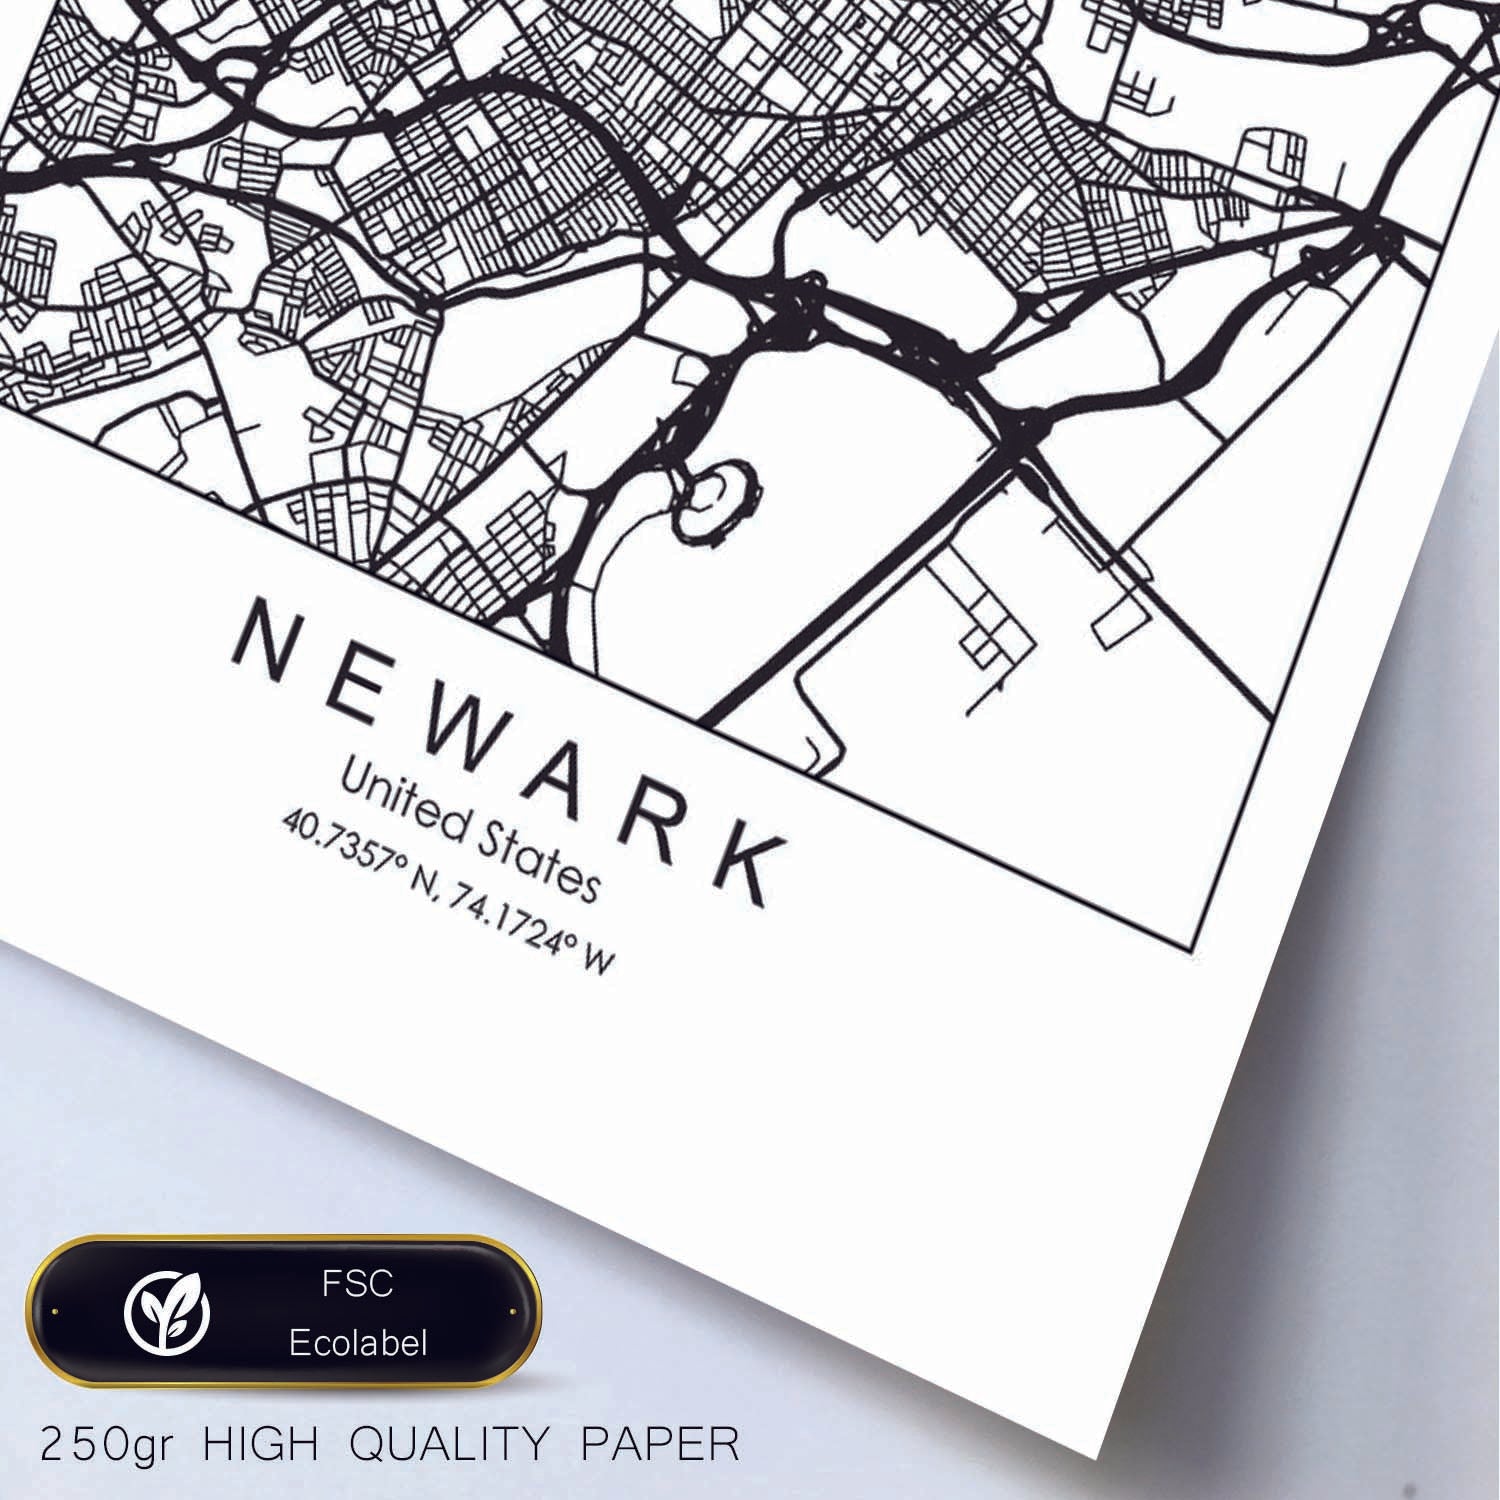 Poster con mapa de Newark. Lámina de Estados Unidos, con imágenes de mapas y carreteras-Artwork-Nacnic-Nacnic Estudio SL